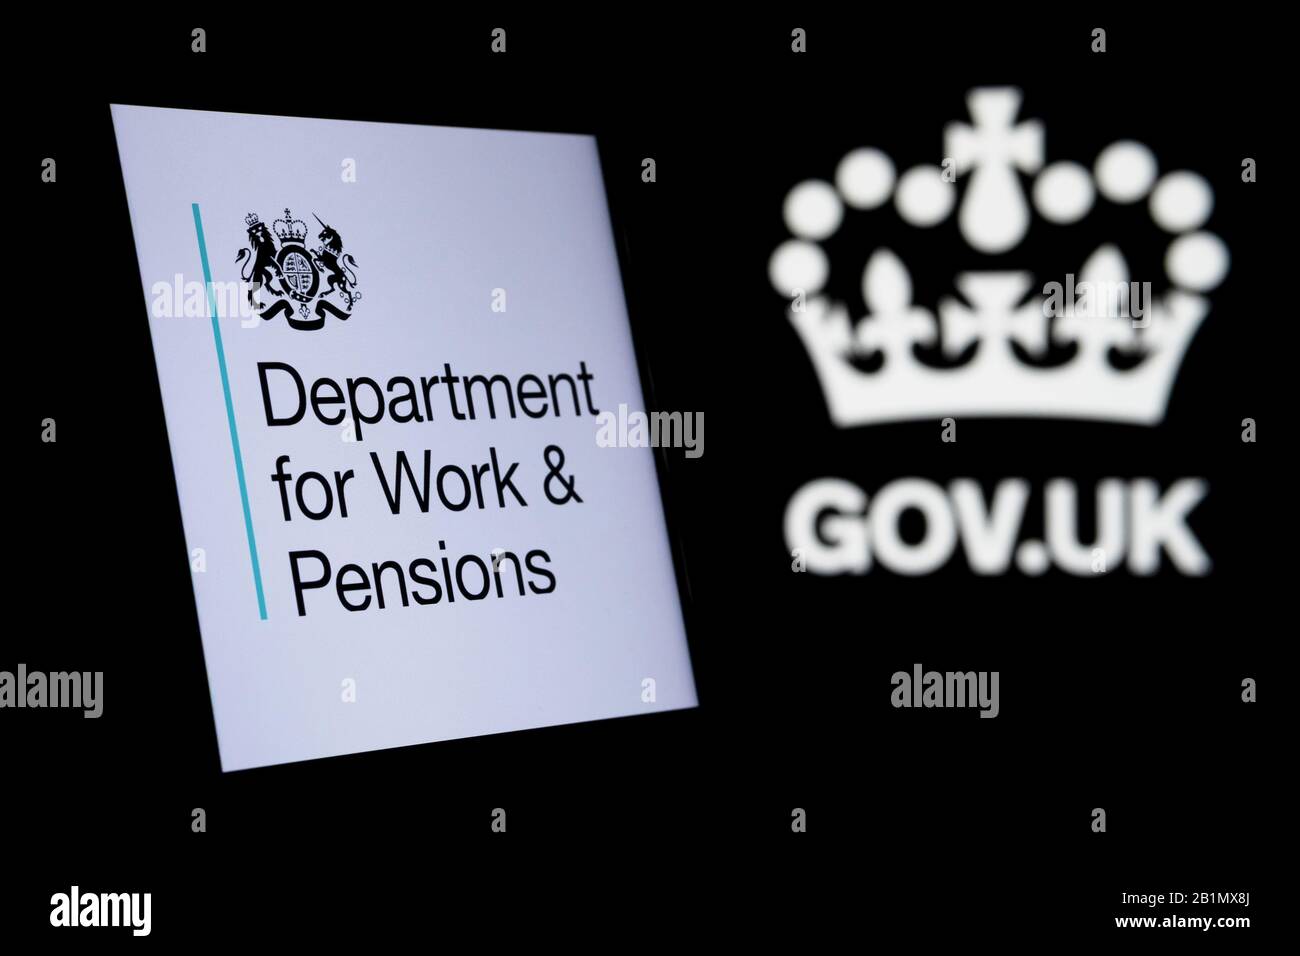 Das Logo des britischen Ministeriums für Arbeit und Renten leuchtet auf dem Smartphone-Bildschirm und das Logo von gov.uk auf dem verschwommenen dunklen Hintergrund. Konzeptfoto. Stockfoto